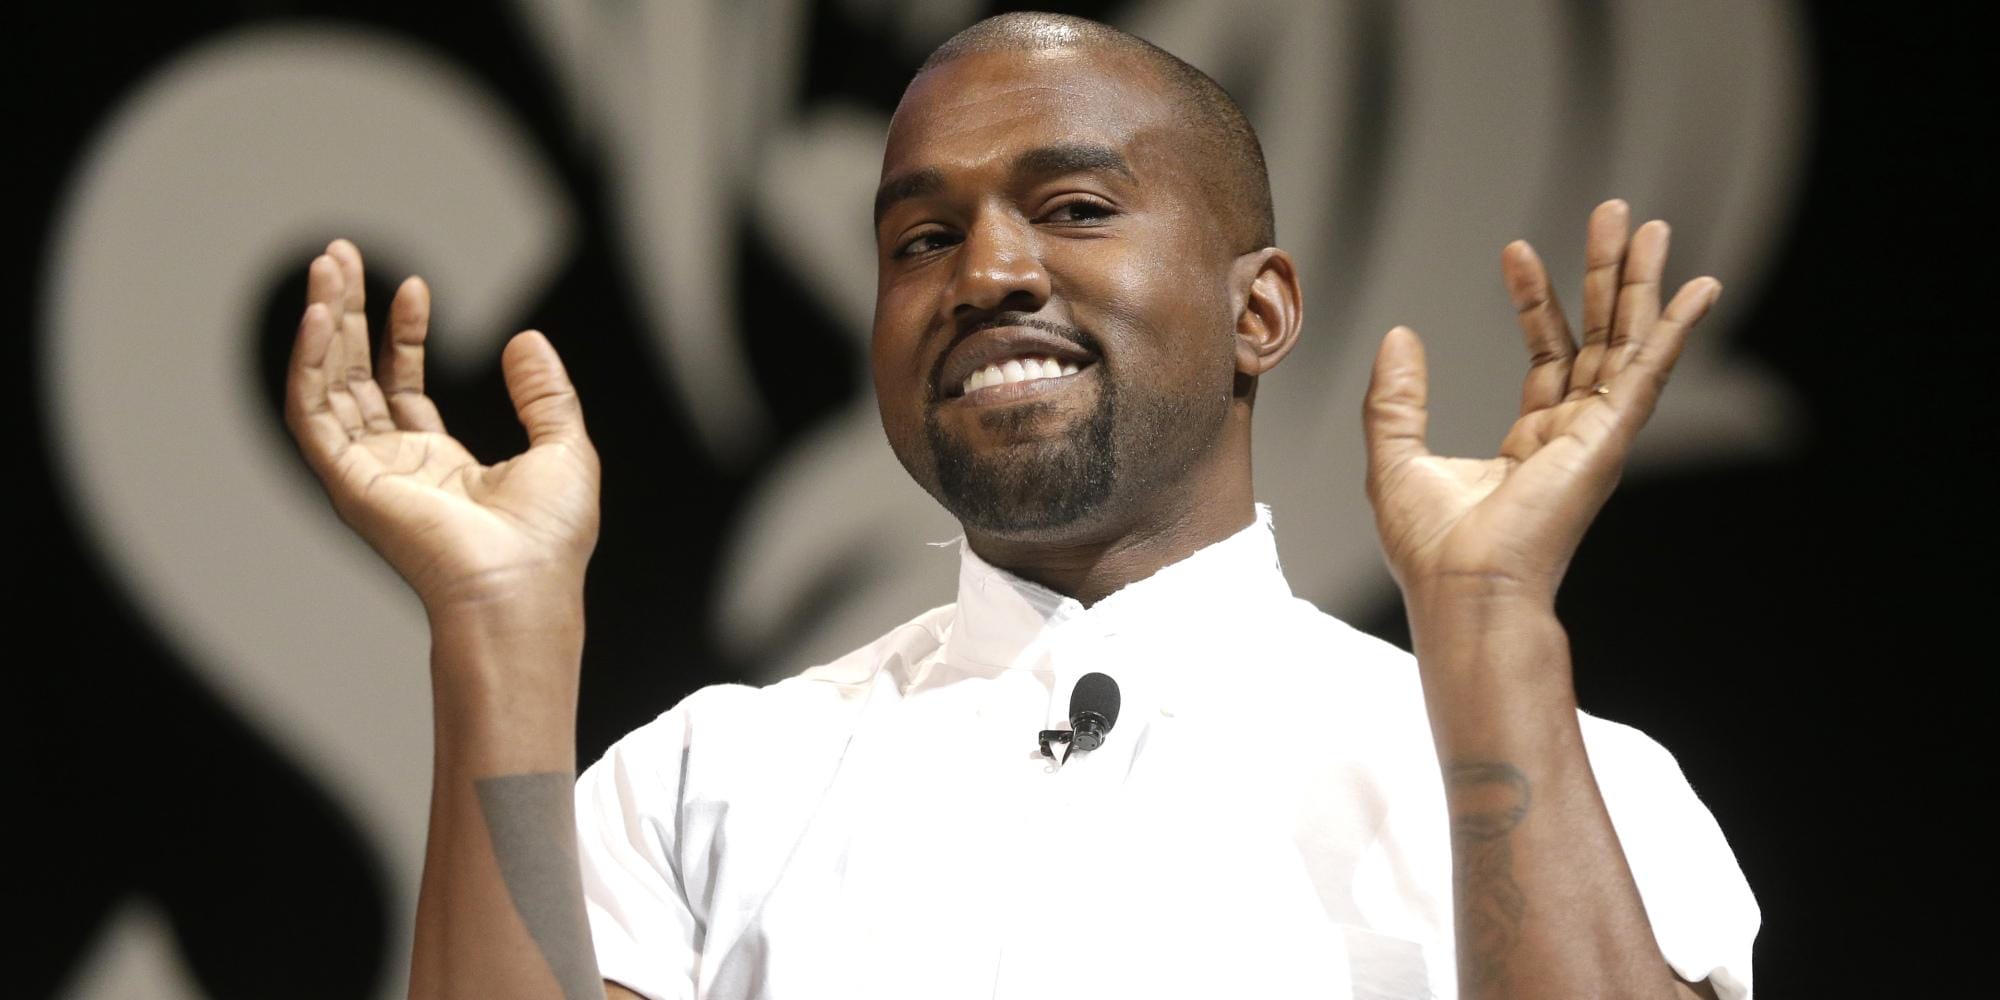 STORY: Le jour où Kanye West a failli avoir une série sur HBO 2